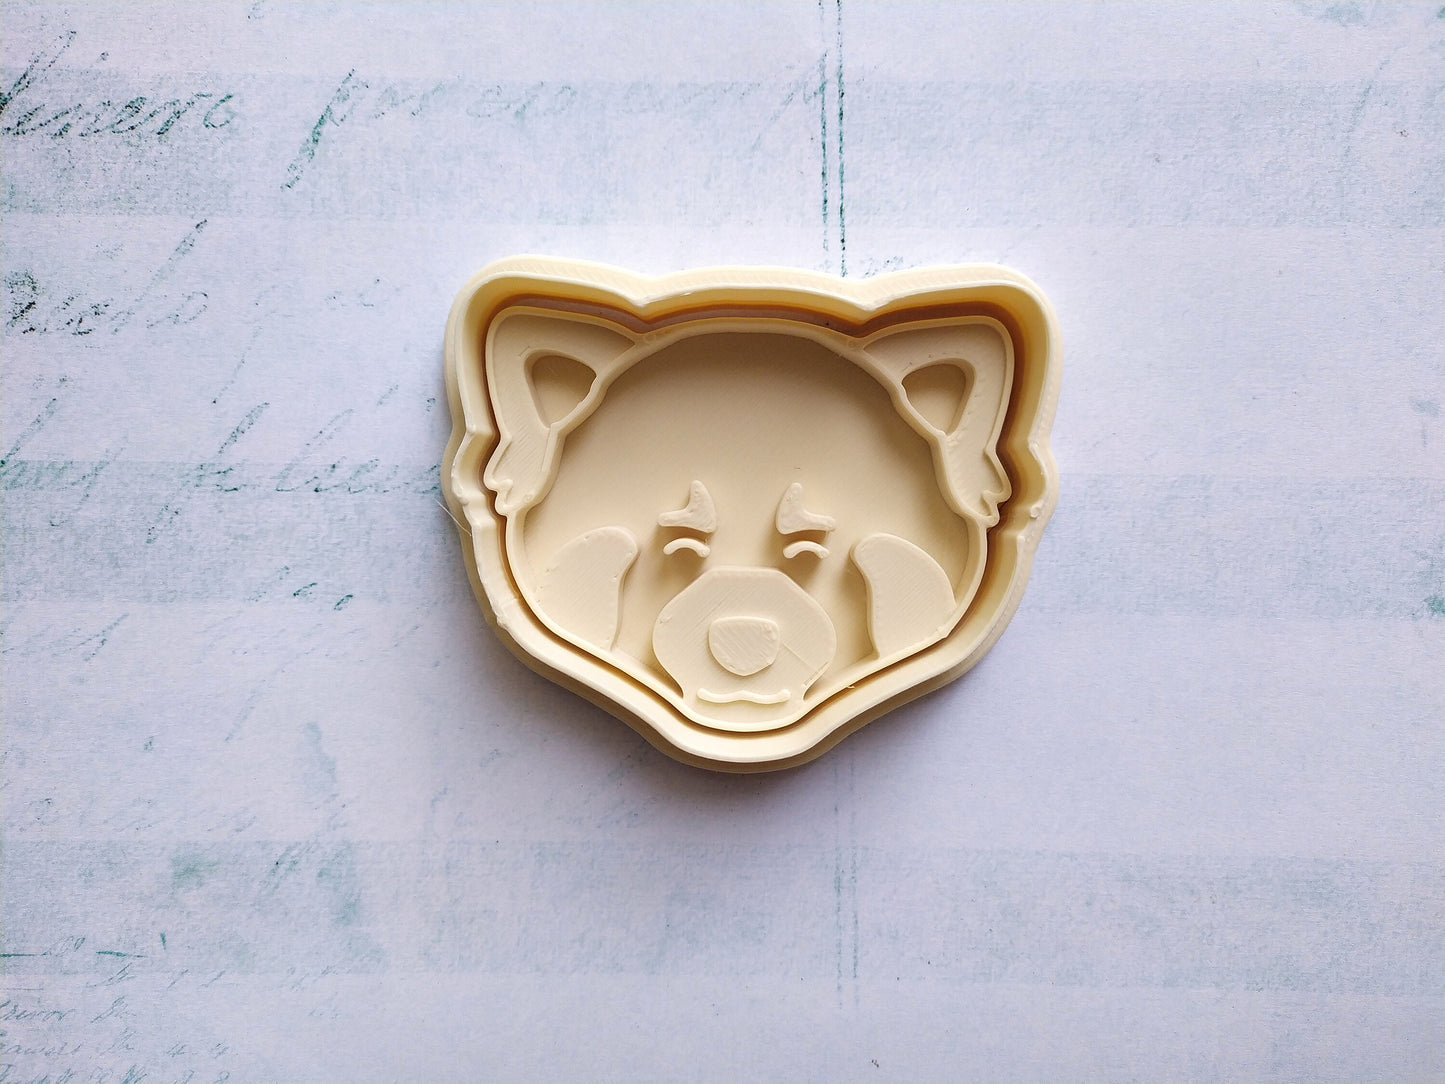 Red panda, head - cookie cutter set